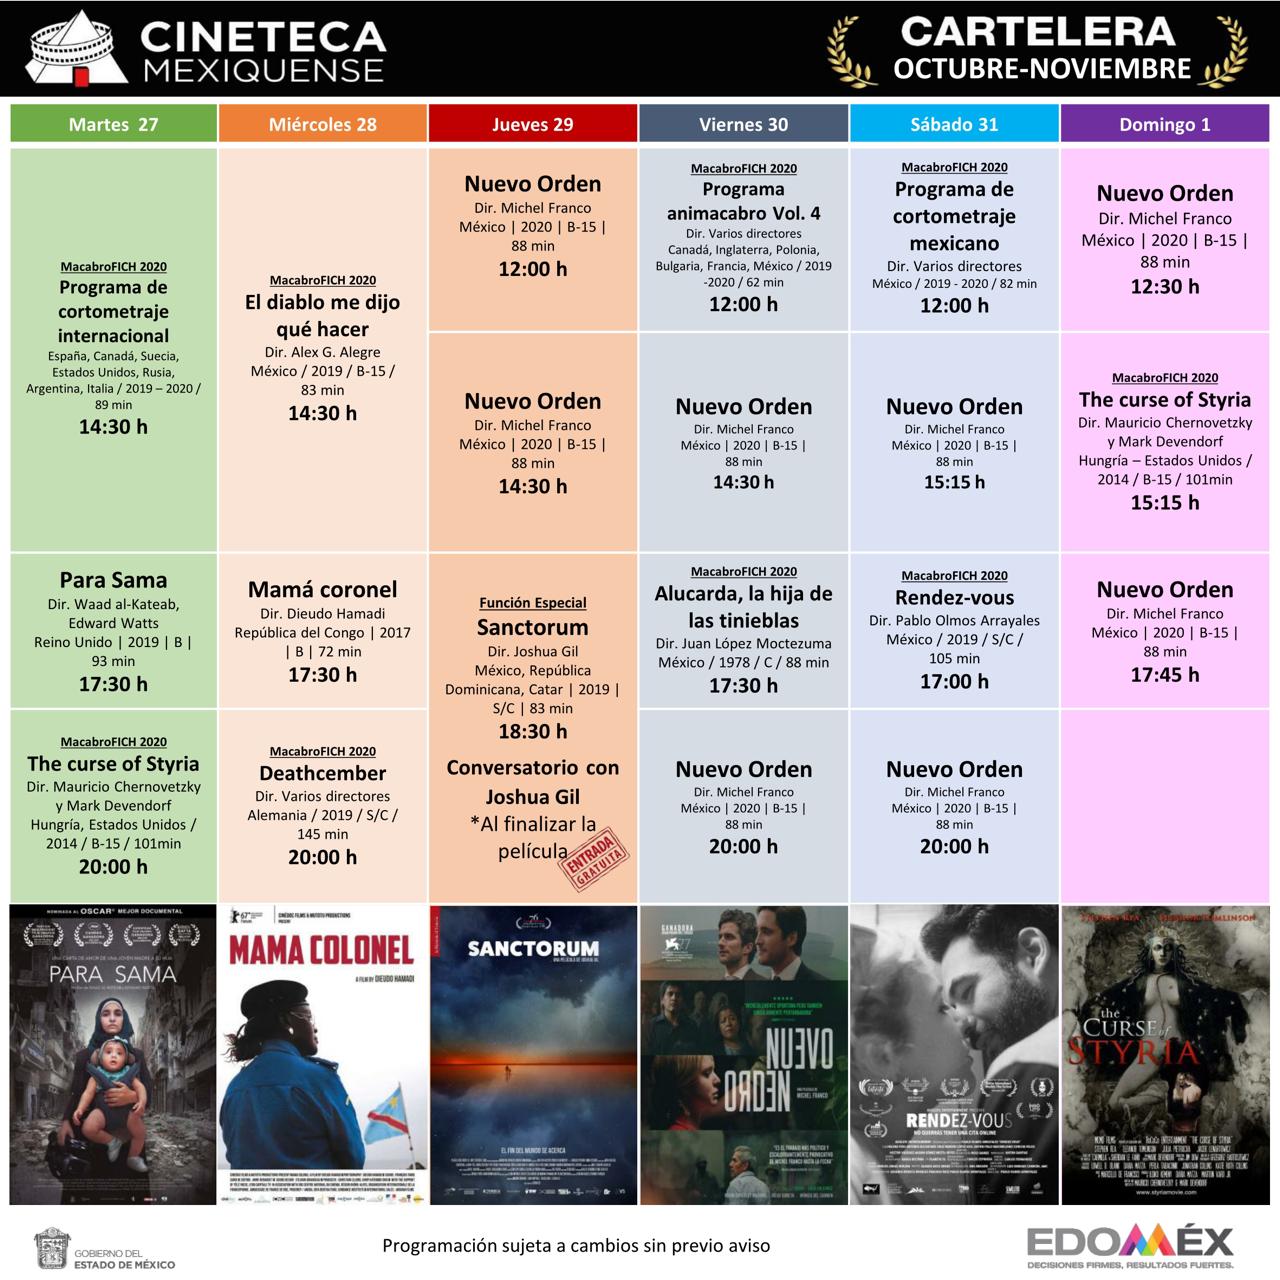 Exhibe cineteca mexiquense películas ganadoras de importantes festivales fílmicos